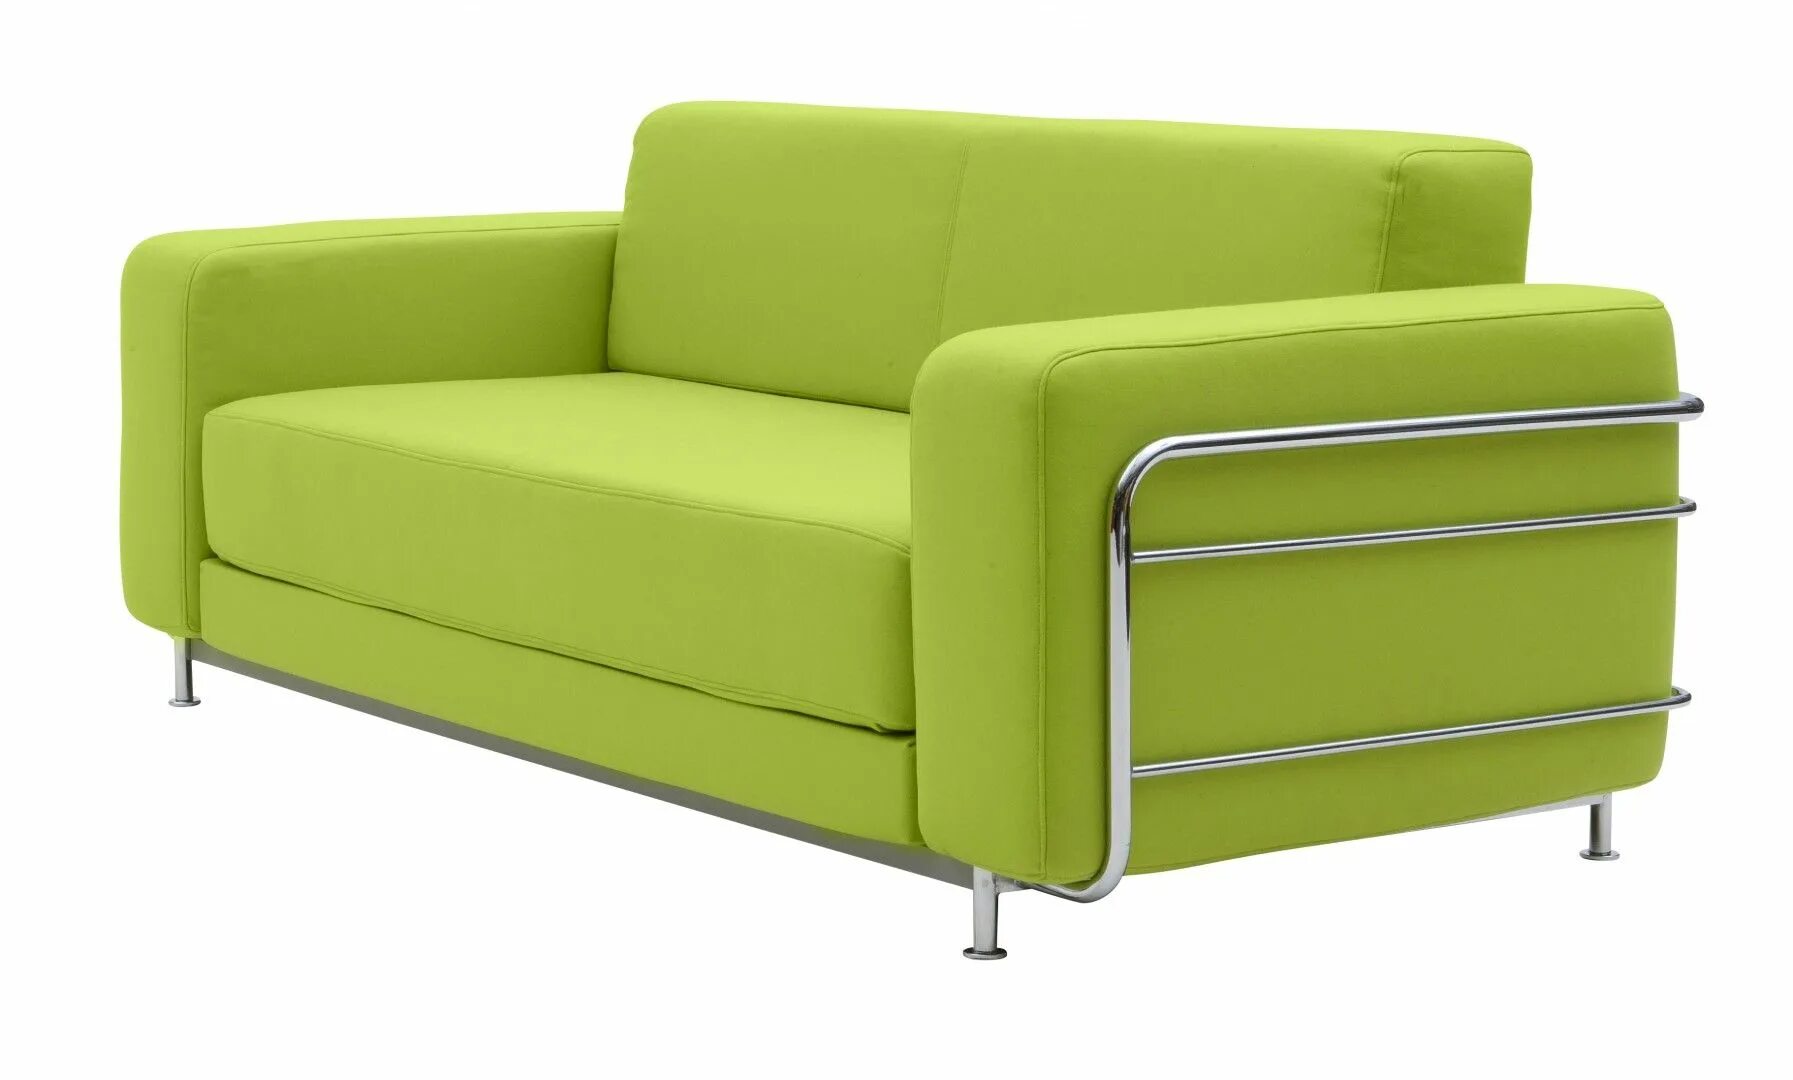 Купить диванчик. Диван трехместный Октава (стандарт, s-0406 (фисташковый), -, -, -). Диван двухместный Mike Sofa. Зеленый диван. Салатовый диван.